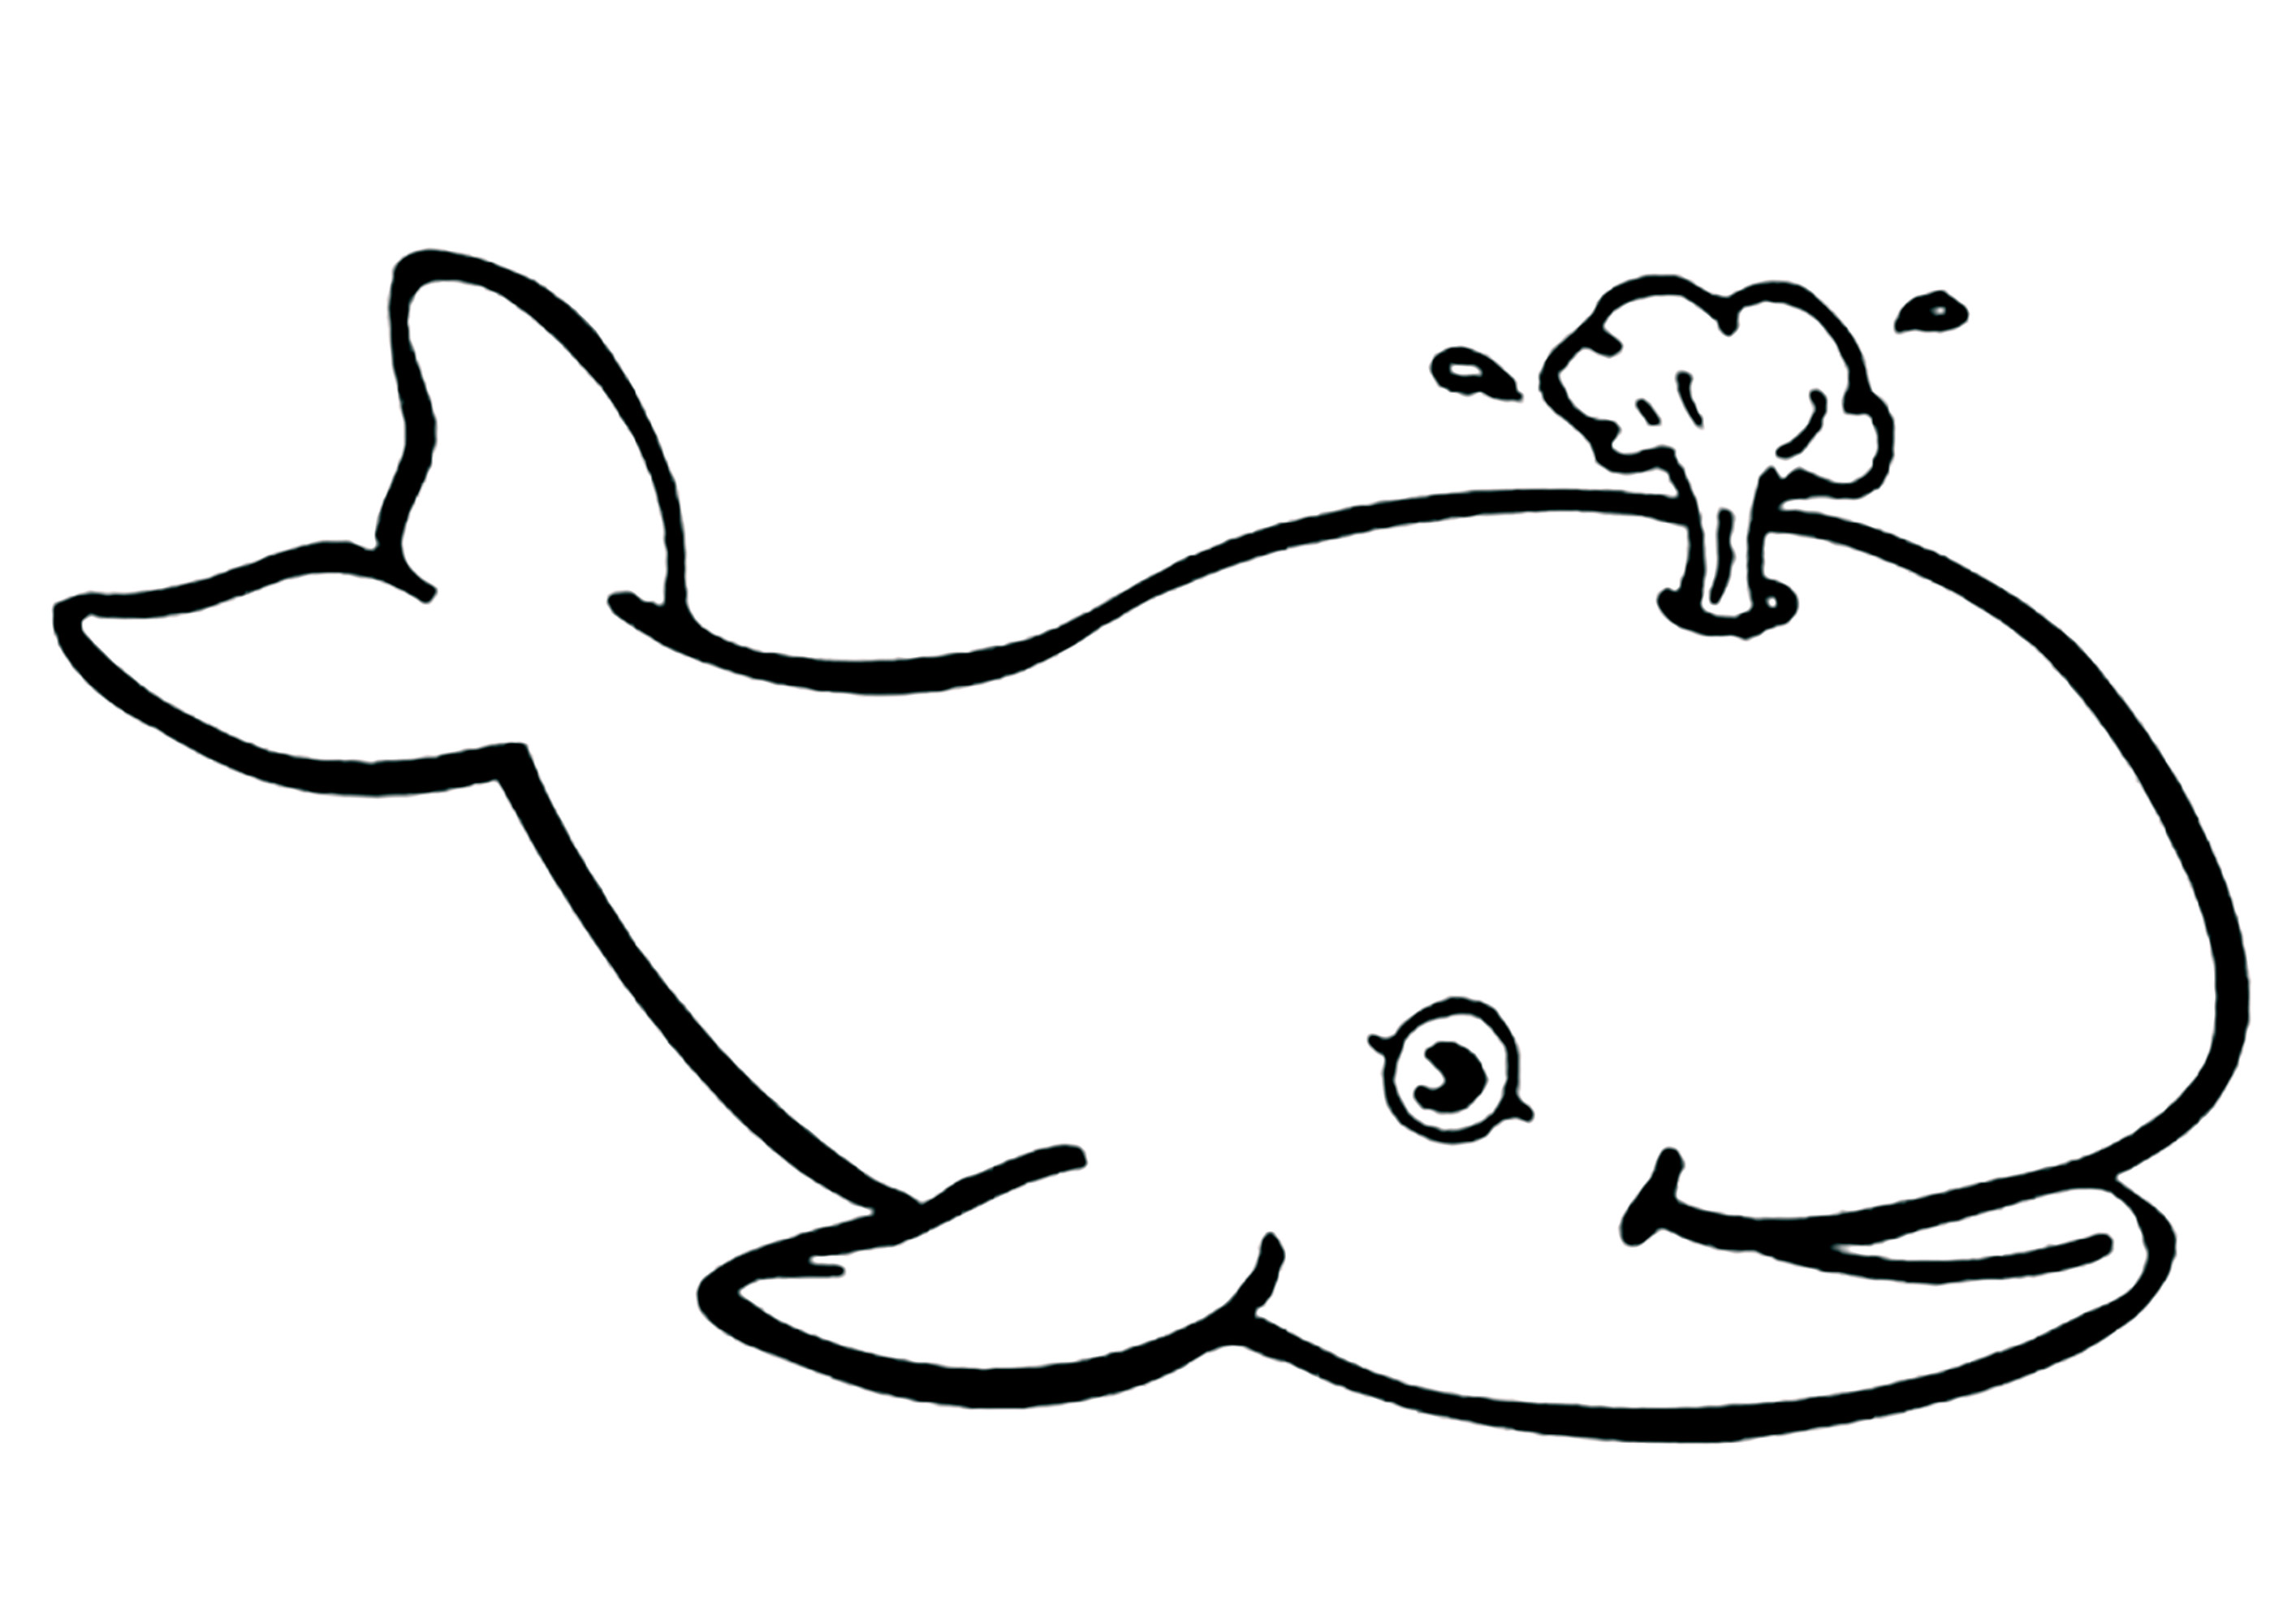 Desenho muito simples para colorir de uma bela baleia a evacuar a água. As Baleias fazem estes jactos de água quando sopram o ar dos pulmões ao subir à superfície para recuperar o fôlego.